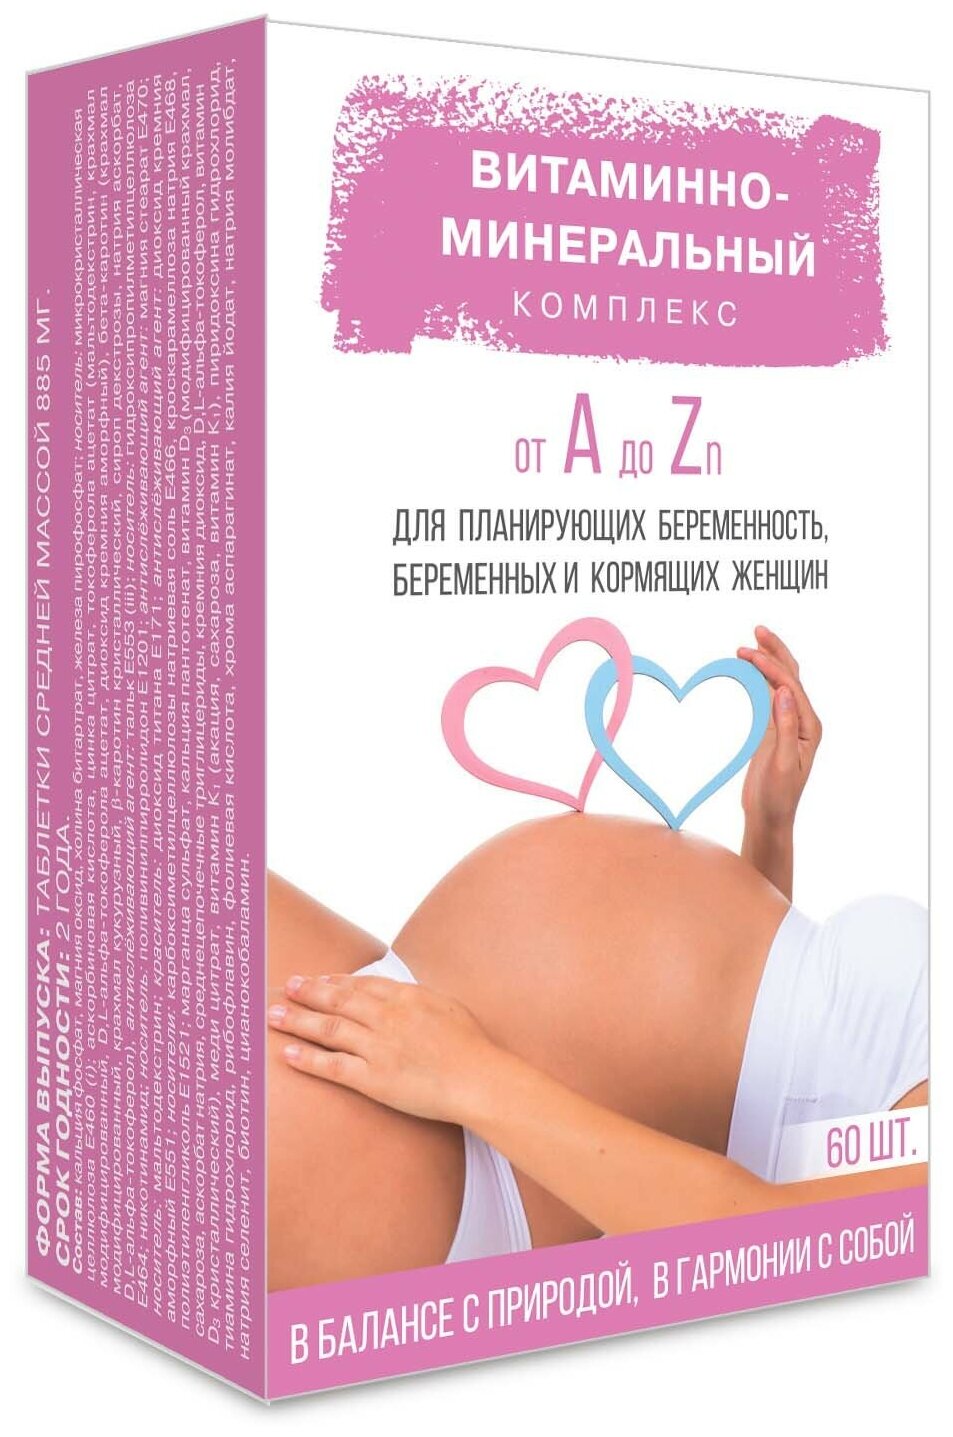 Витаминно-минеральный комплекс от А до Zn для планирующих беременность беременных и кормящих женщин таб.